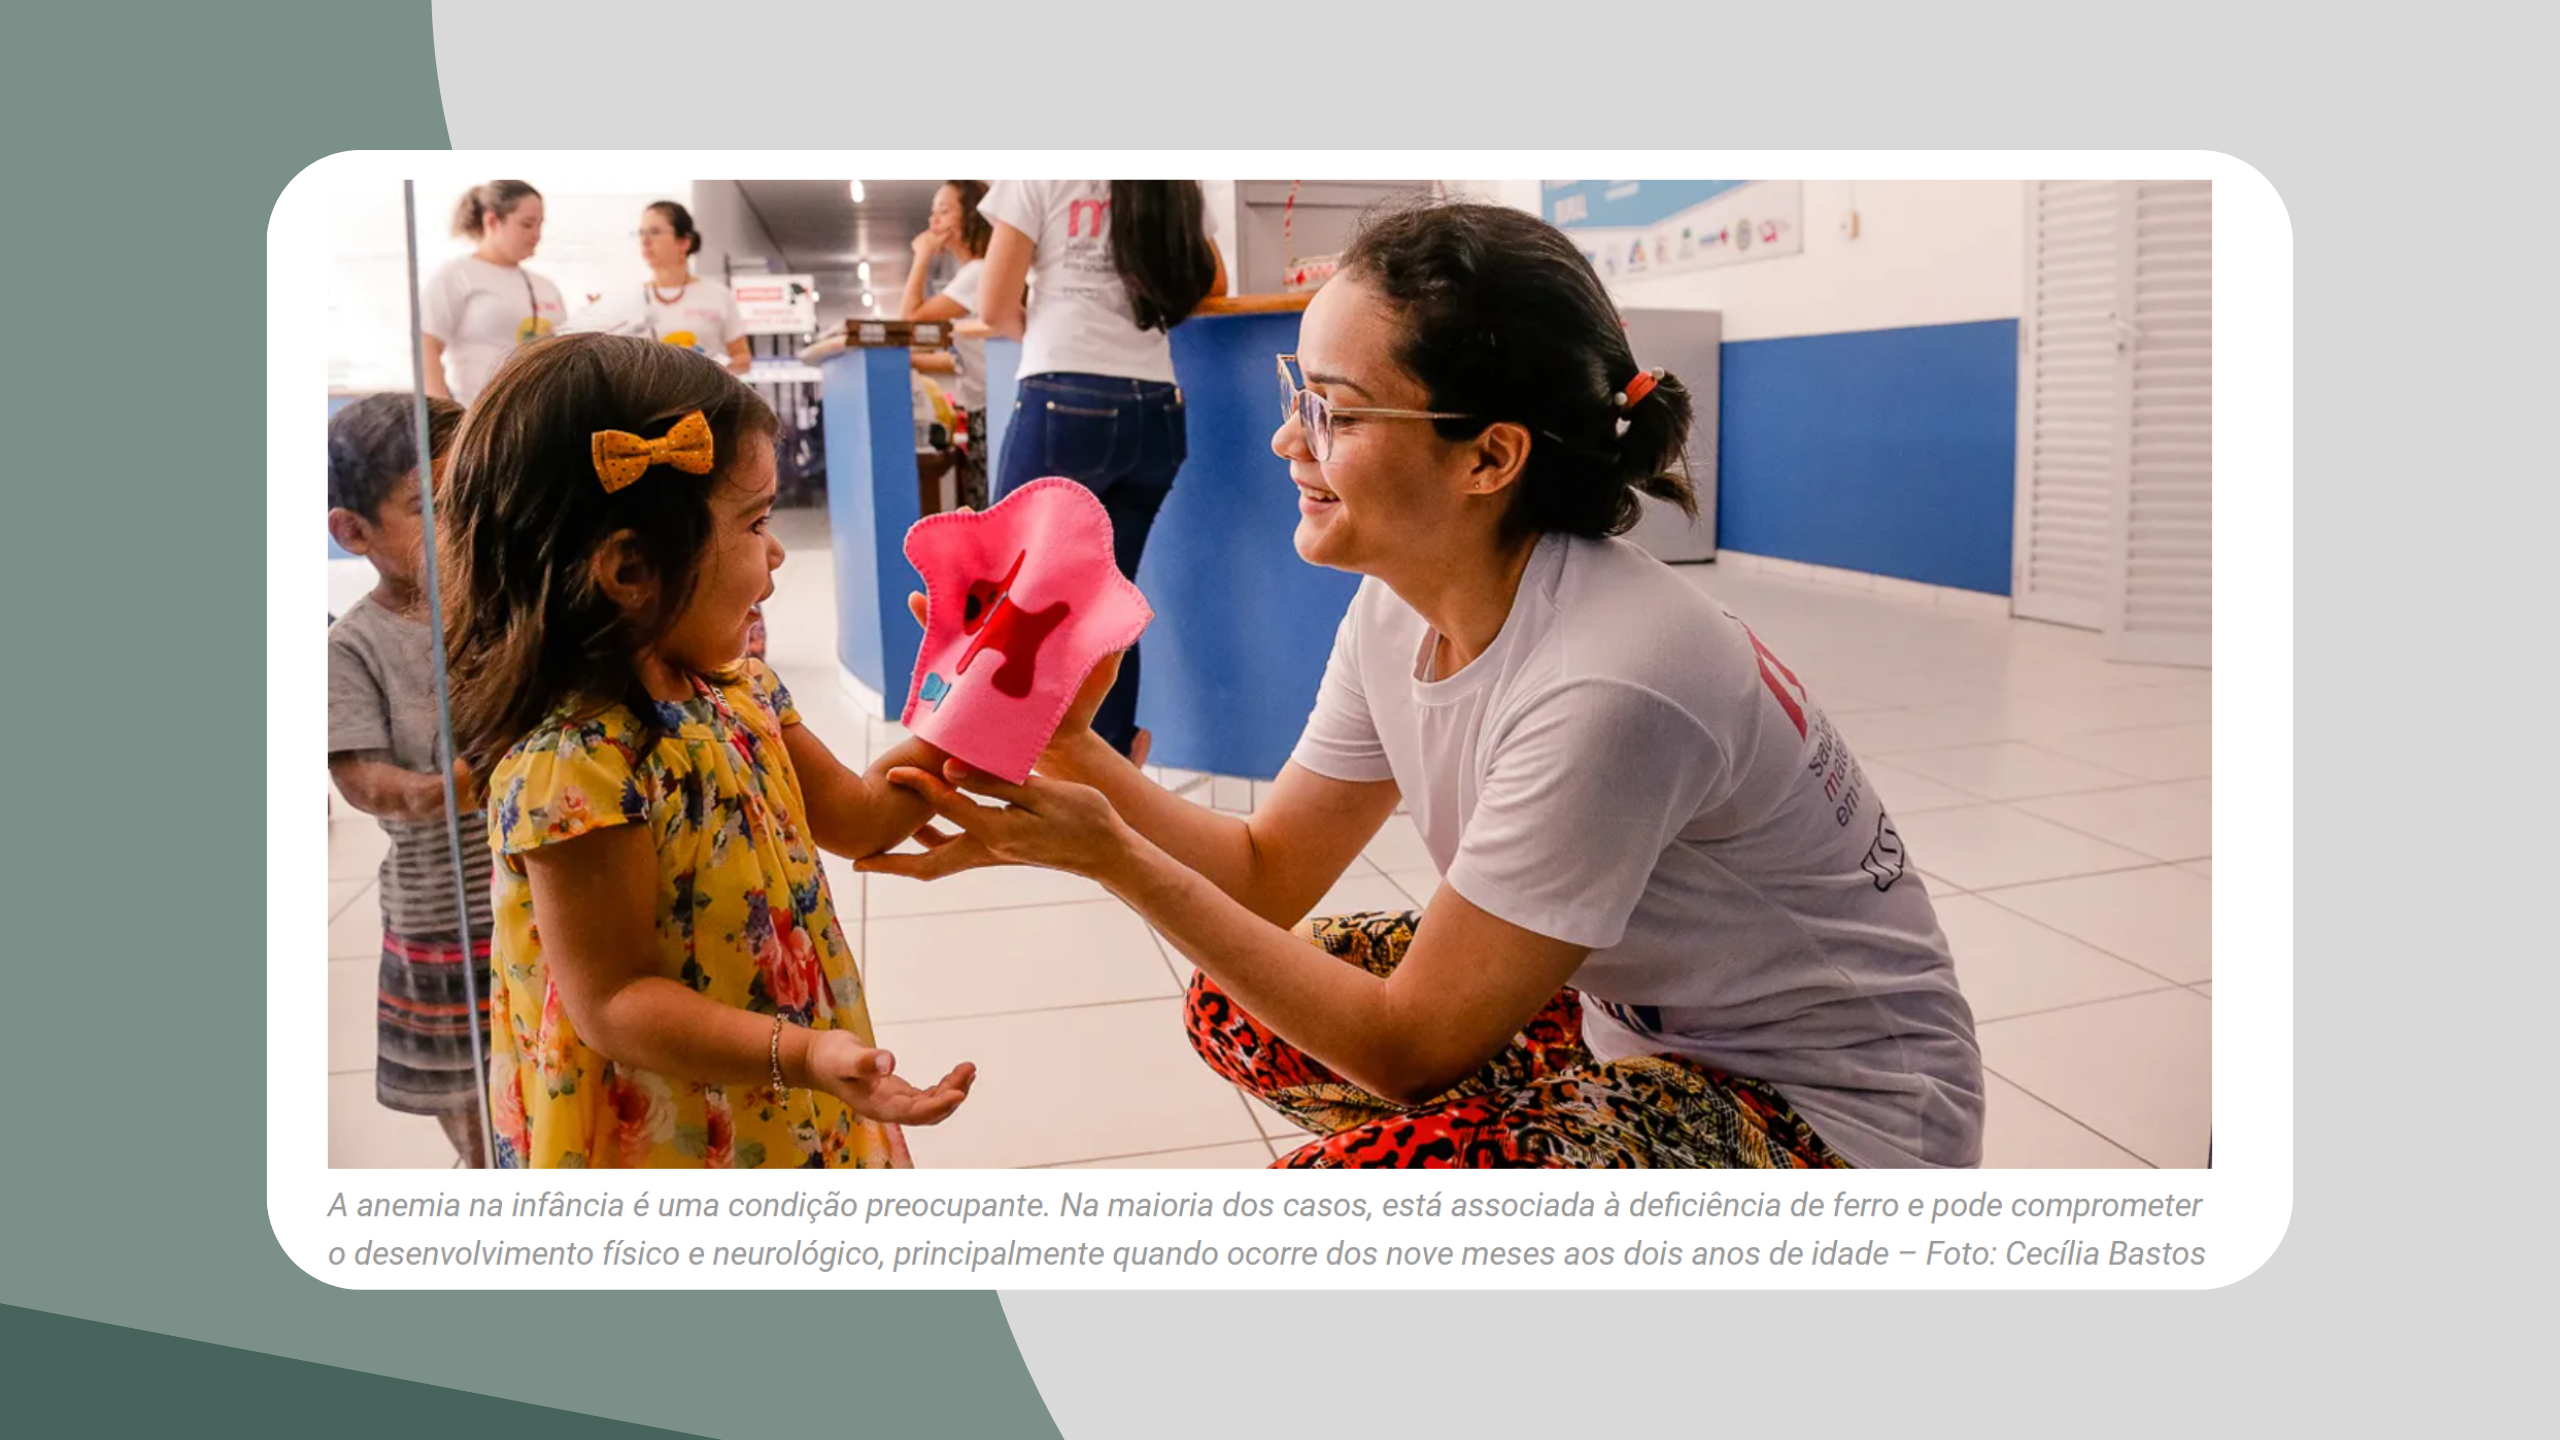 Você está visualizando atualmente Matéria do Jornal da USP fala a respeito do estudo que relaciona anemia e malária em crianças de Cruzeiro do Sul, Acre.